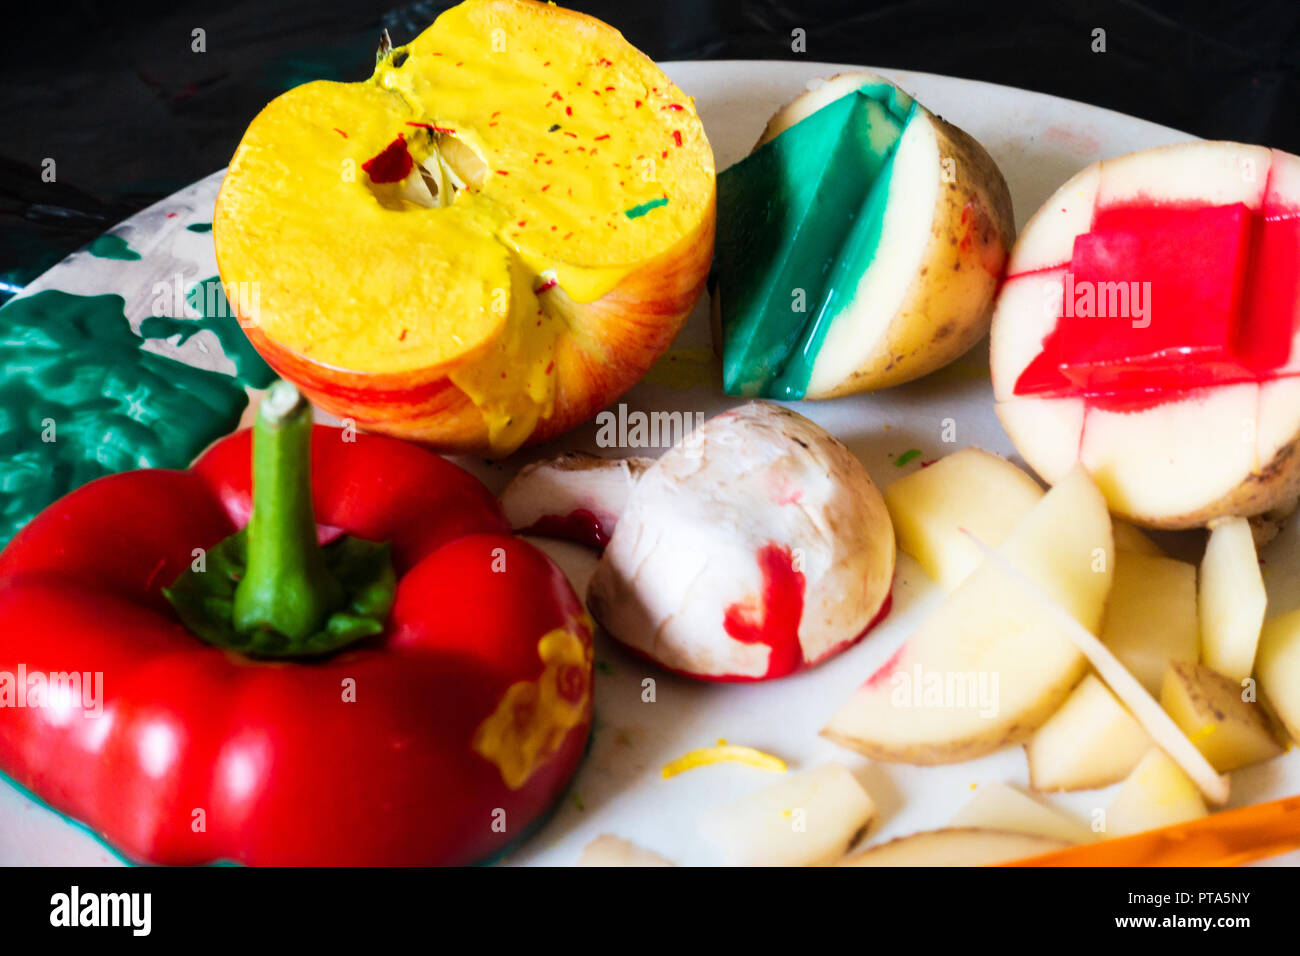 Gemüse in der Hälfte und als Briefmarken mit Farbe. Stockfoto